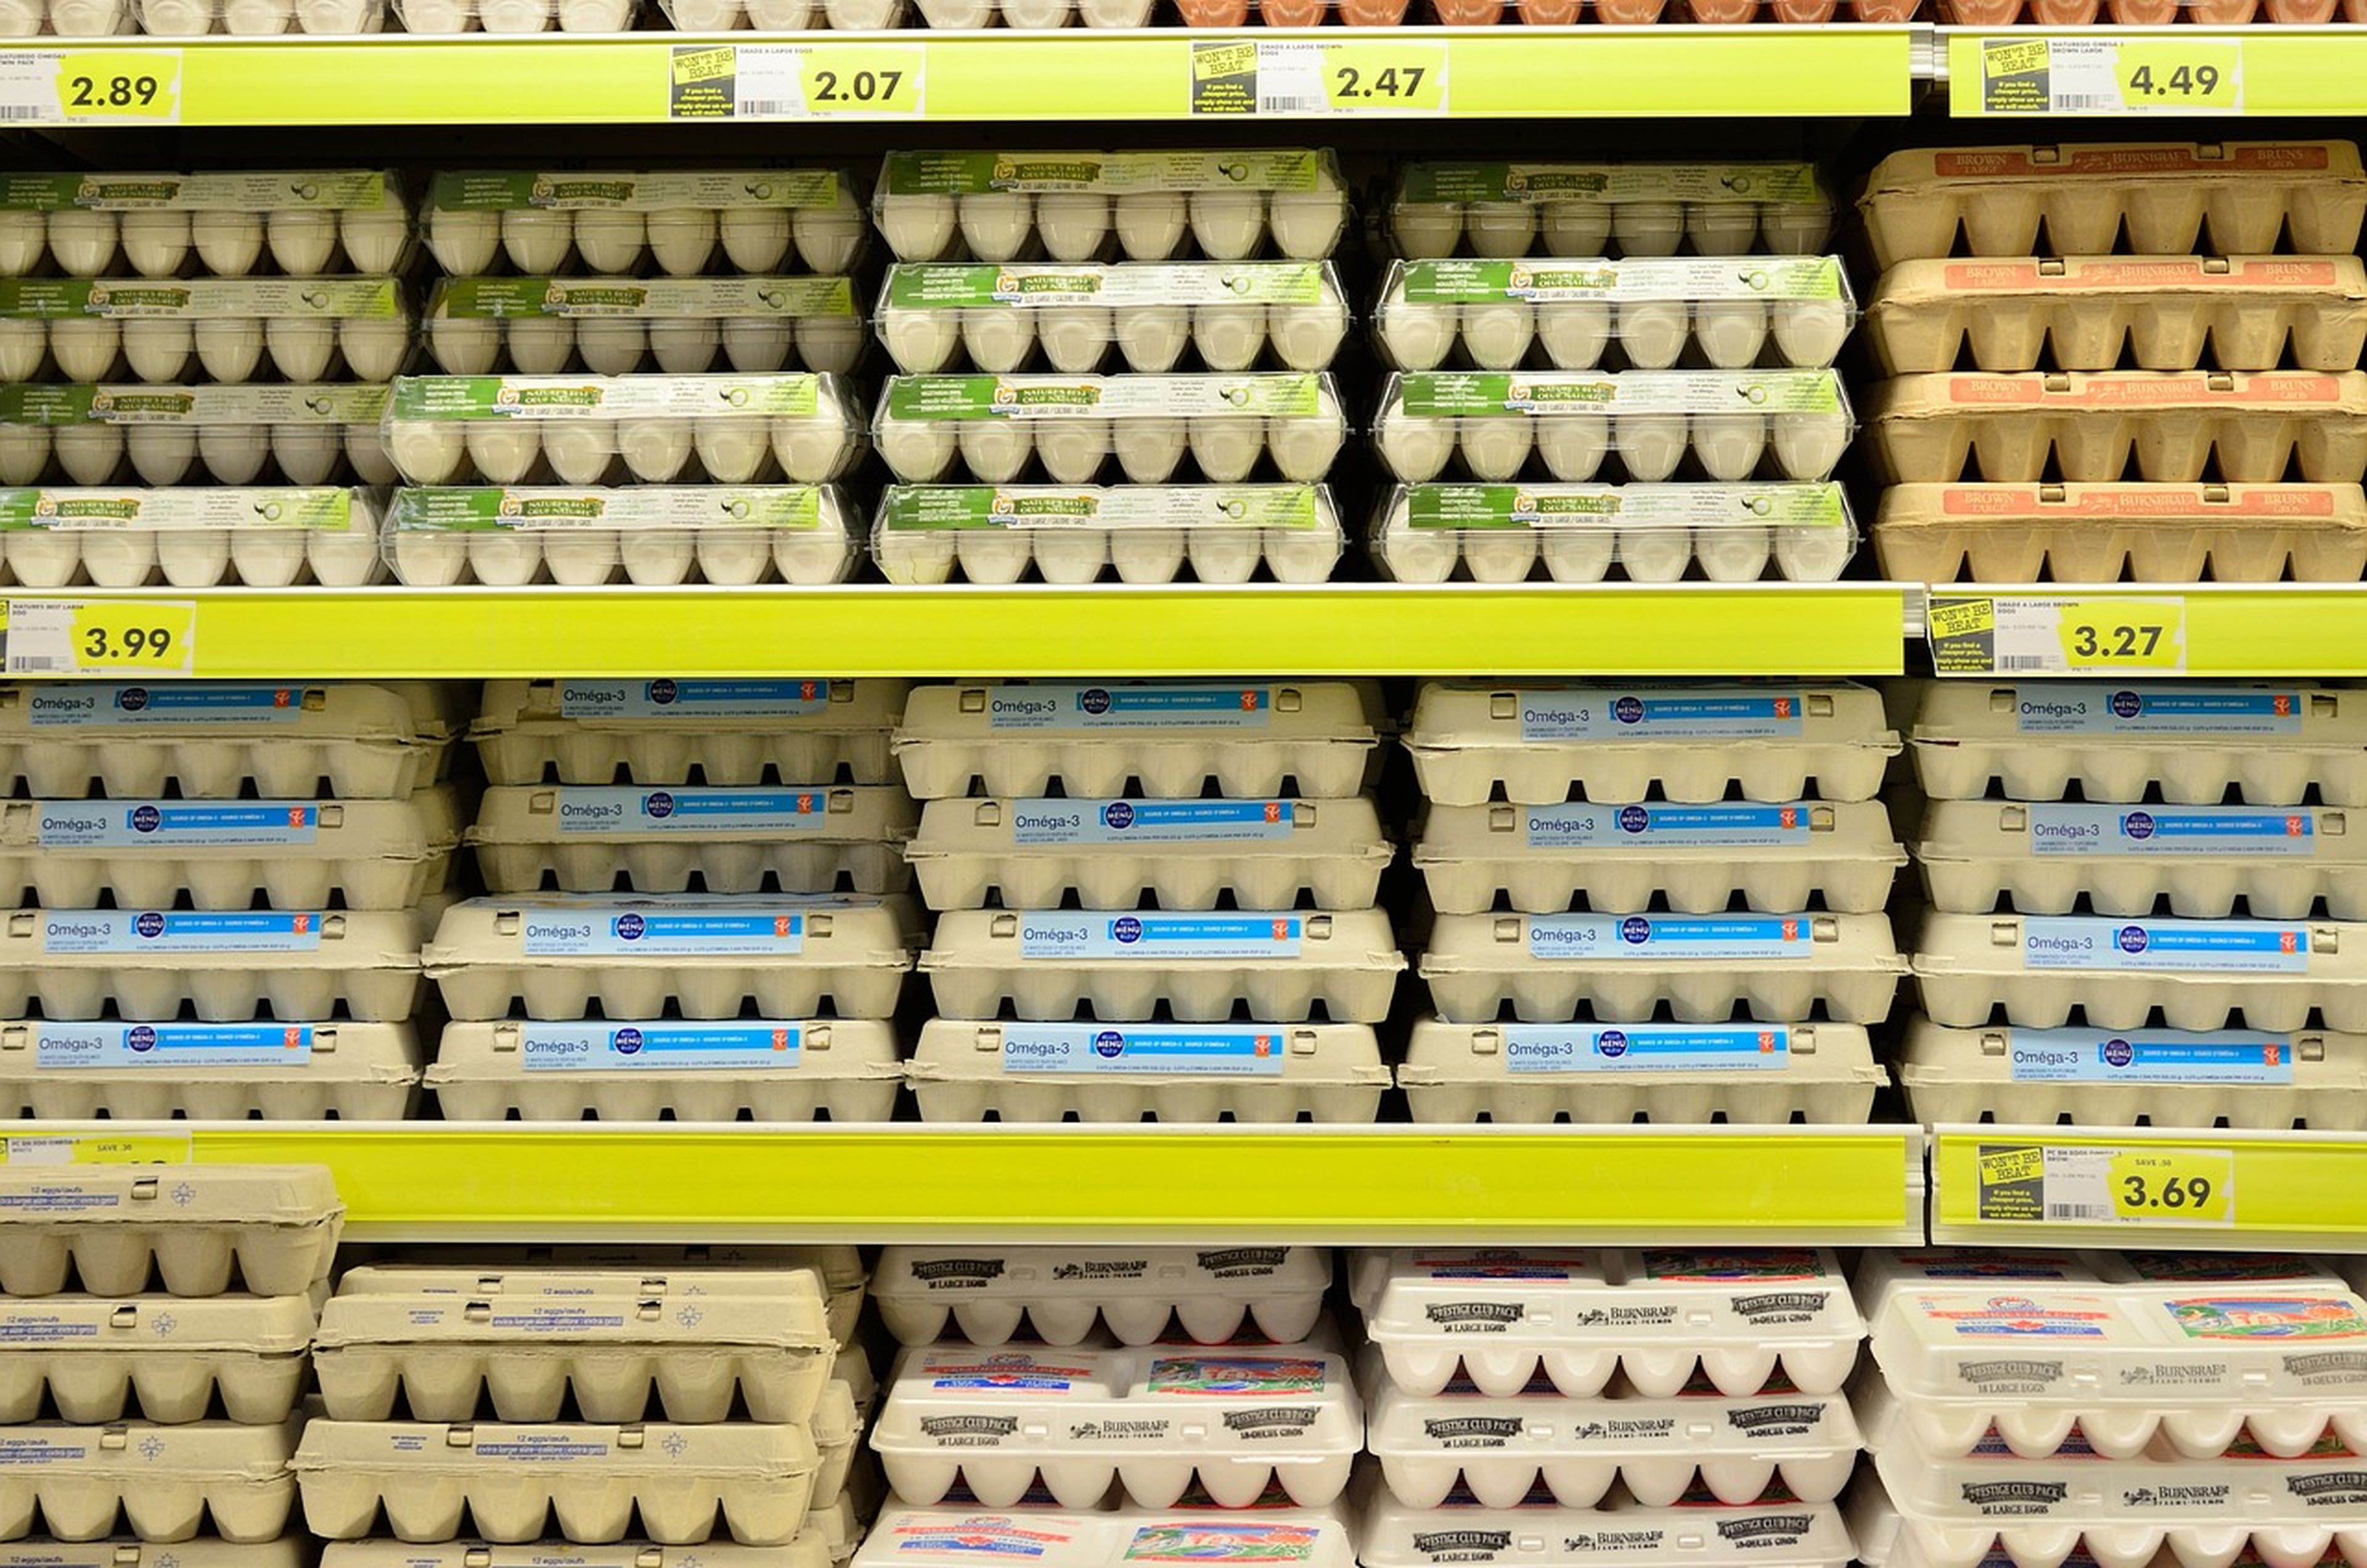 Los huevos son uno de los productos del supermercado cuyo IVA se ha reducido del 4% al 0%.